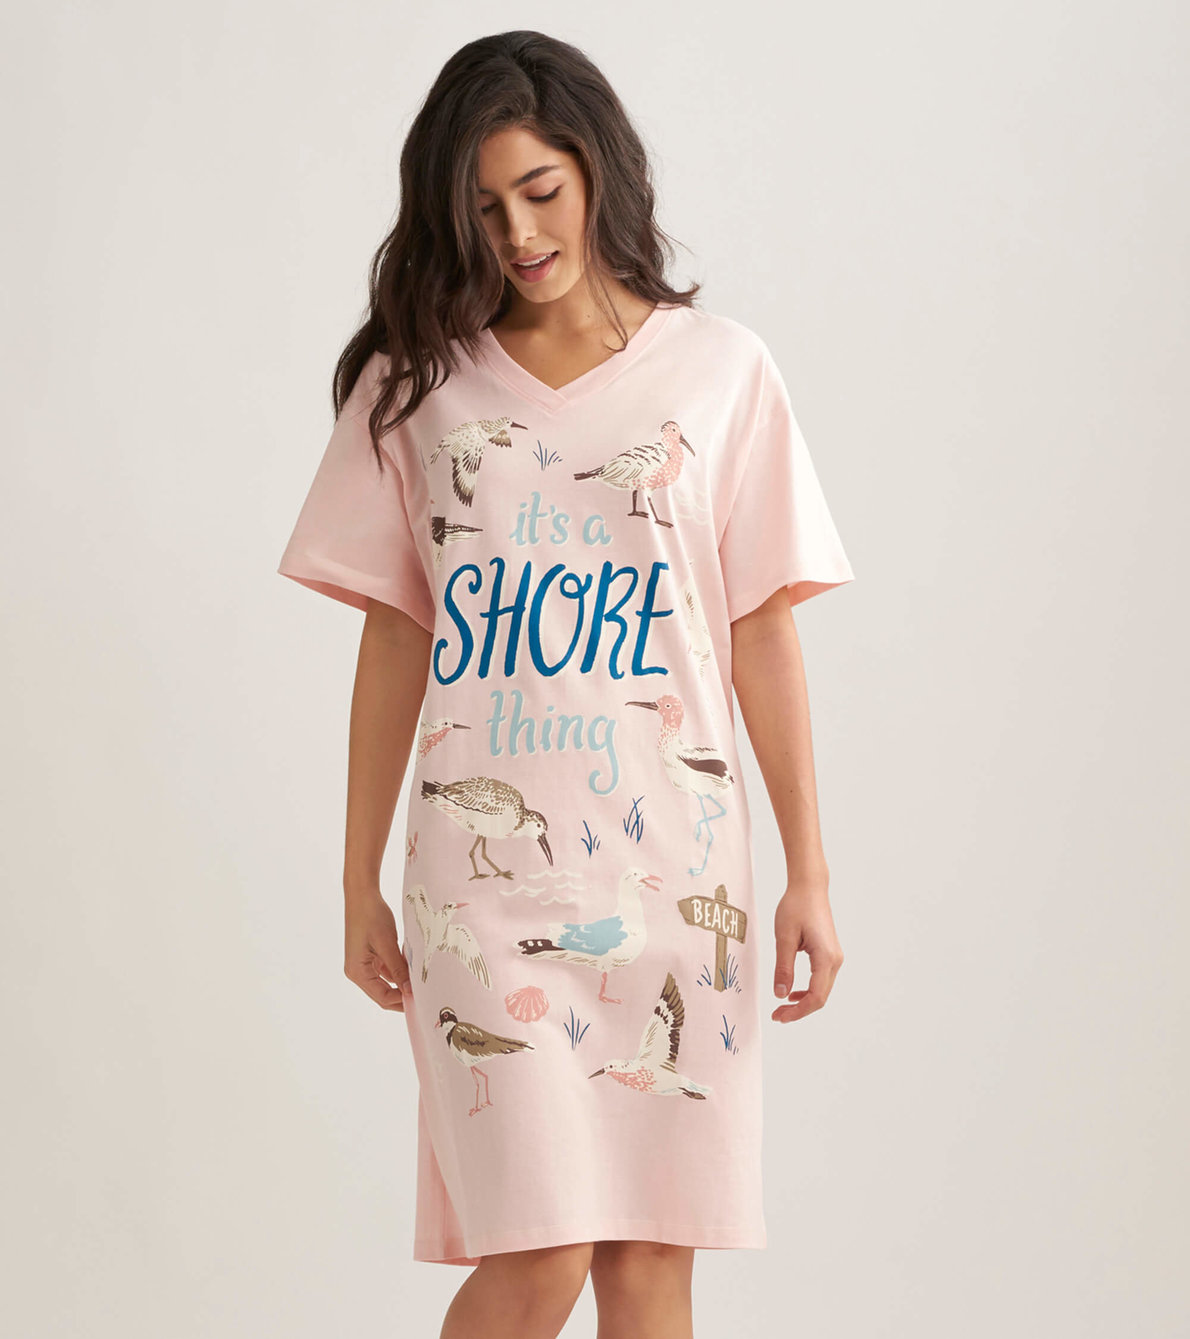 View larger image of Shore Thing Women's Sleepshirt